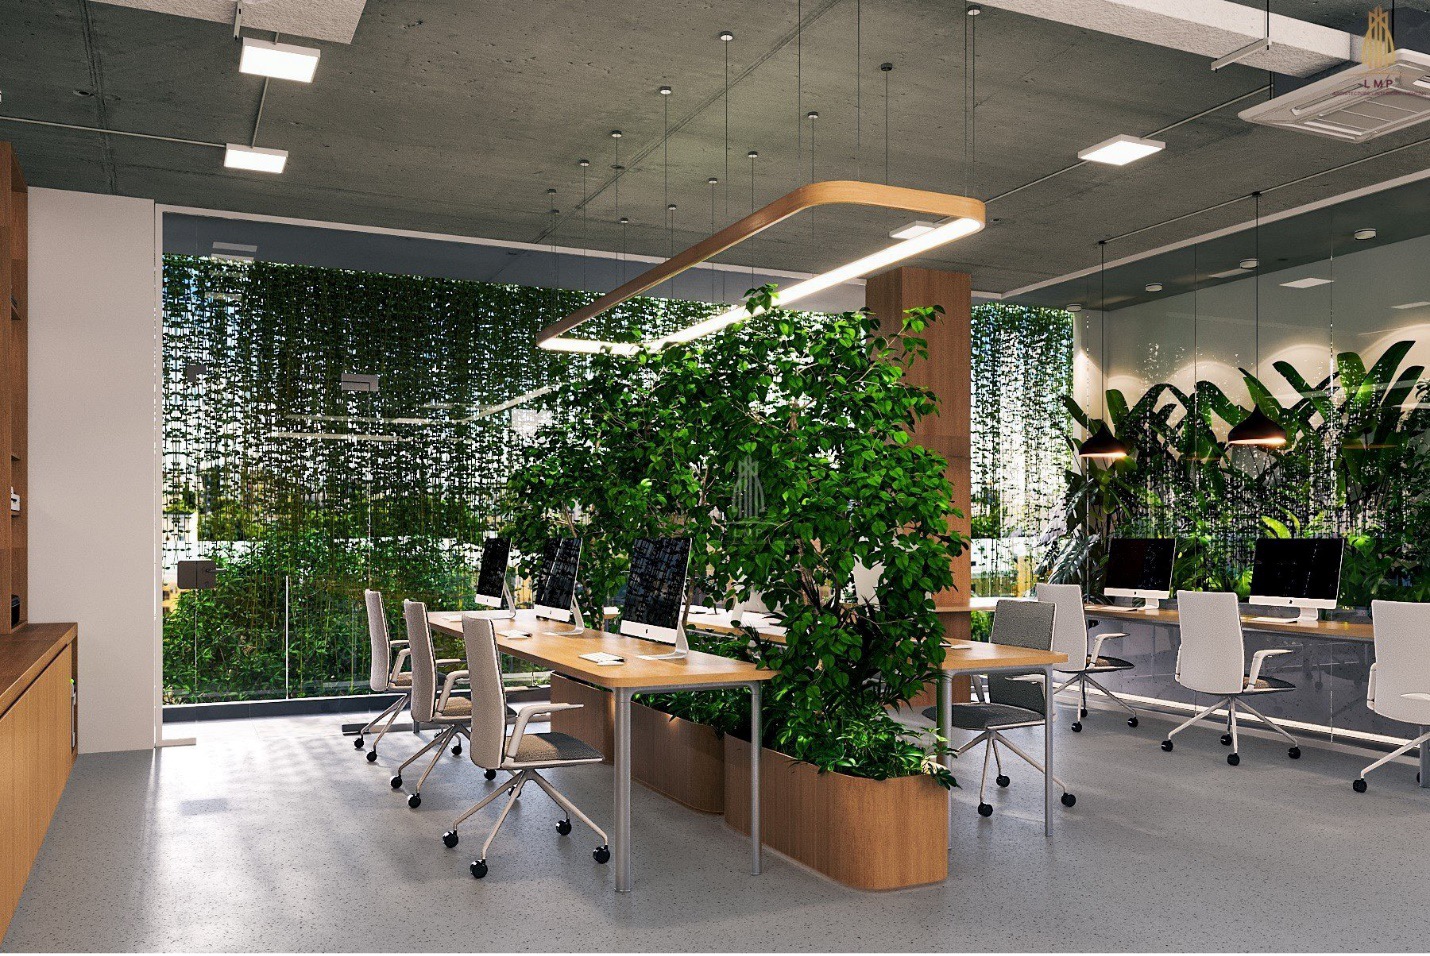 Mảng xanh trong văn phòng LMP - Tạo dựng môi trường làm việc thân thiện và bền vững